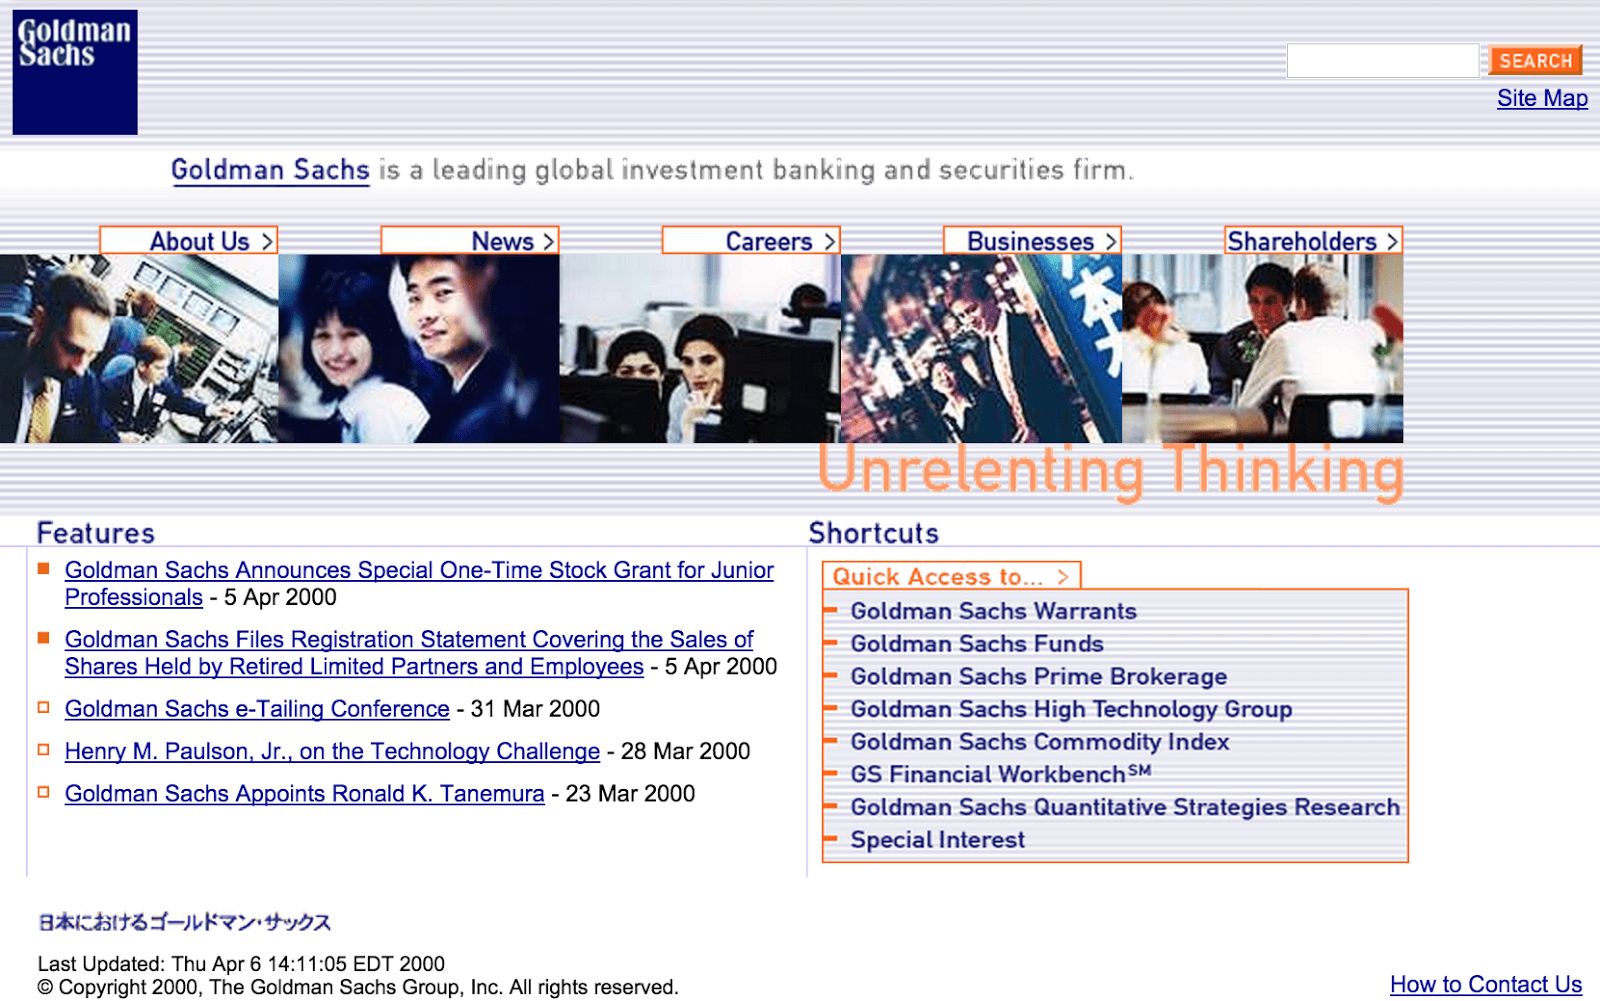 Homepage of Goldman Sachs - 2000